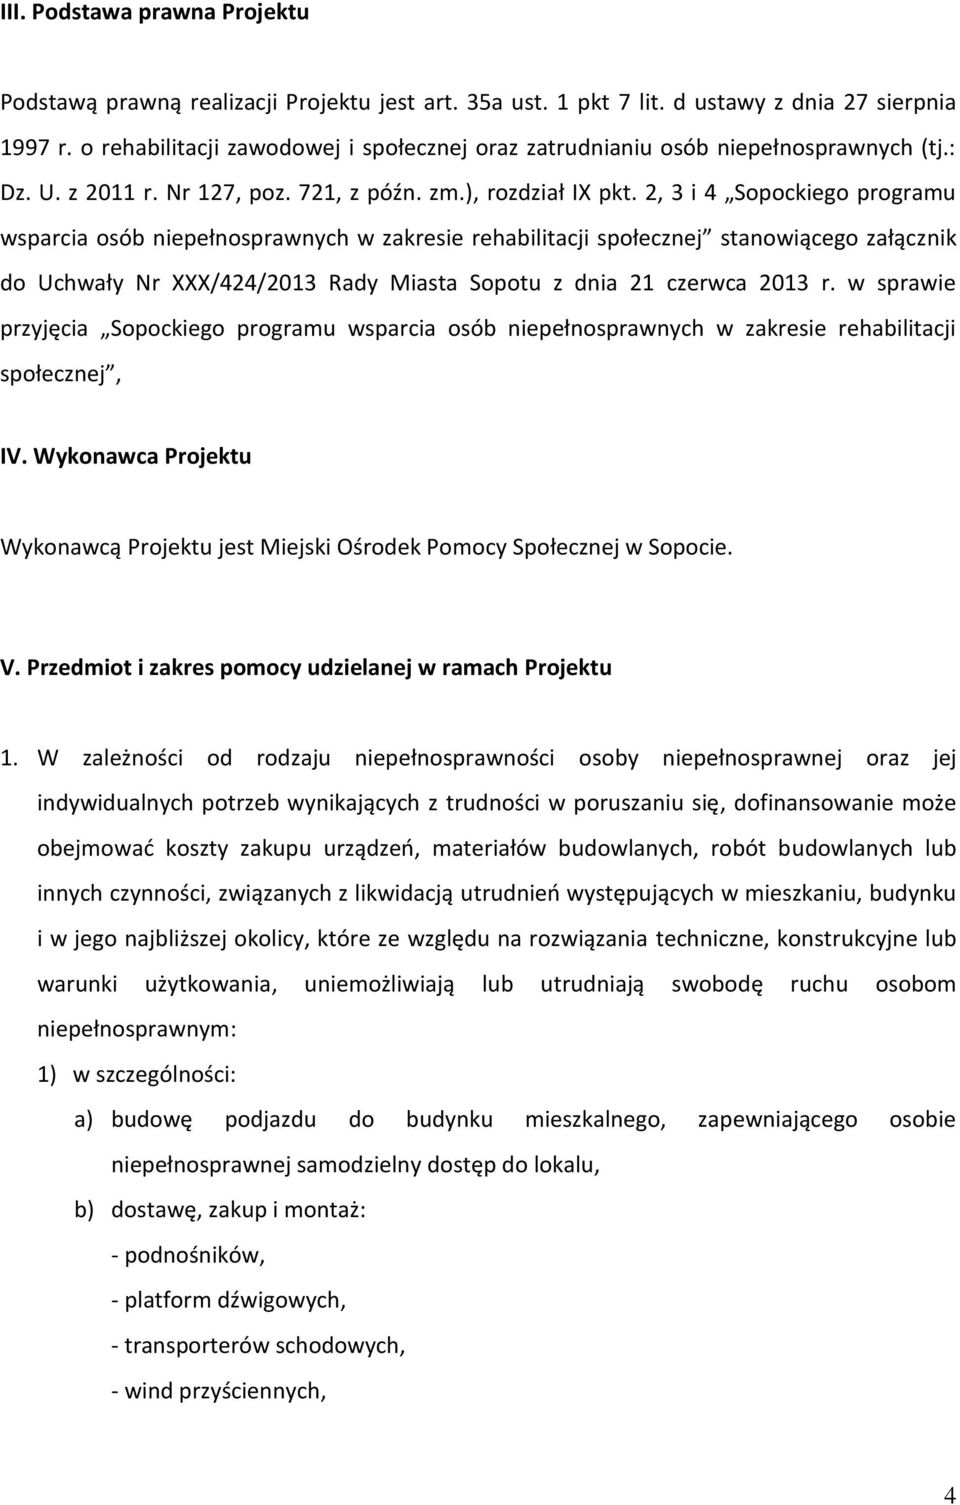 2, 3 i 4 Sopockiego programu wsparcia osób niepełnosprawnych w zakresie rehabilitacji społecznej stanowiącego załącznik do Uchwały Nr XXX/424/2013 Rady Miasta Sopotu z dnia 21 czerwca 2013 r.